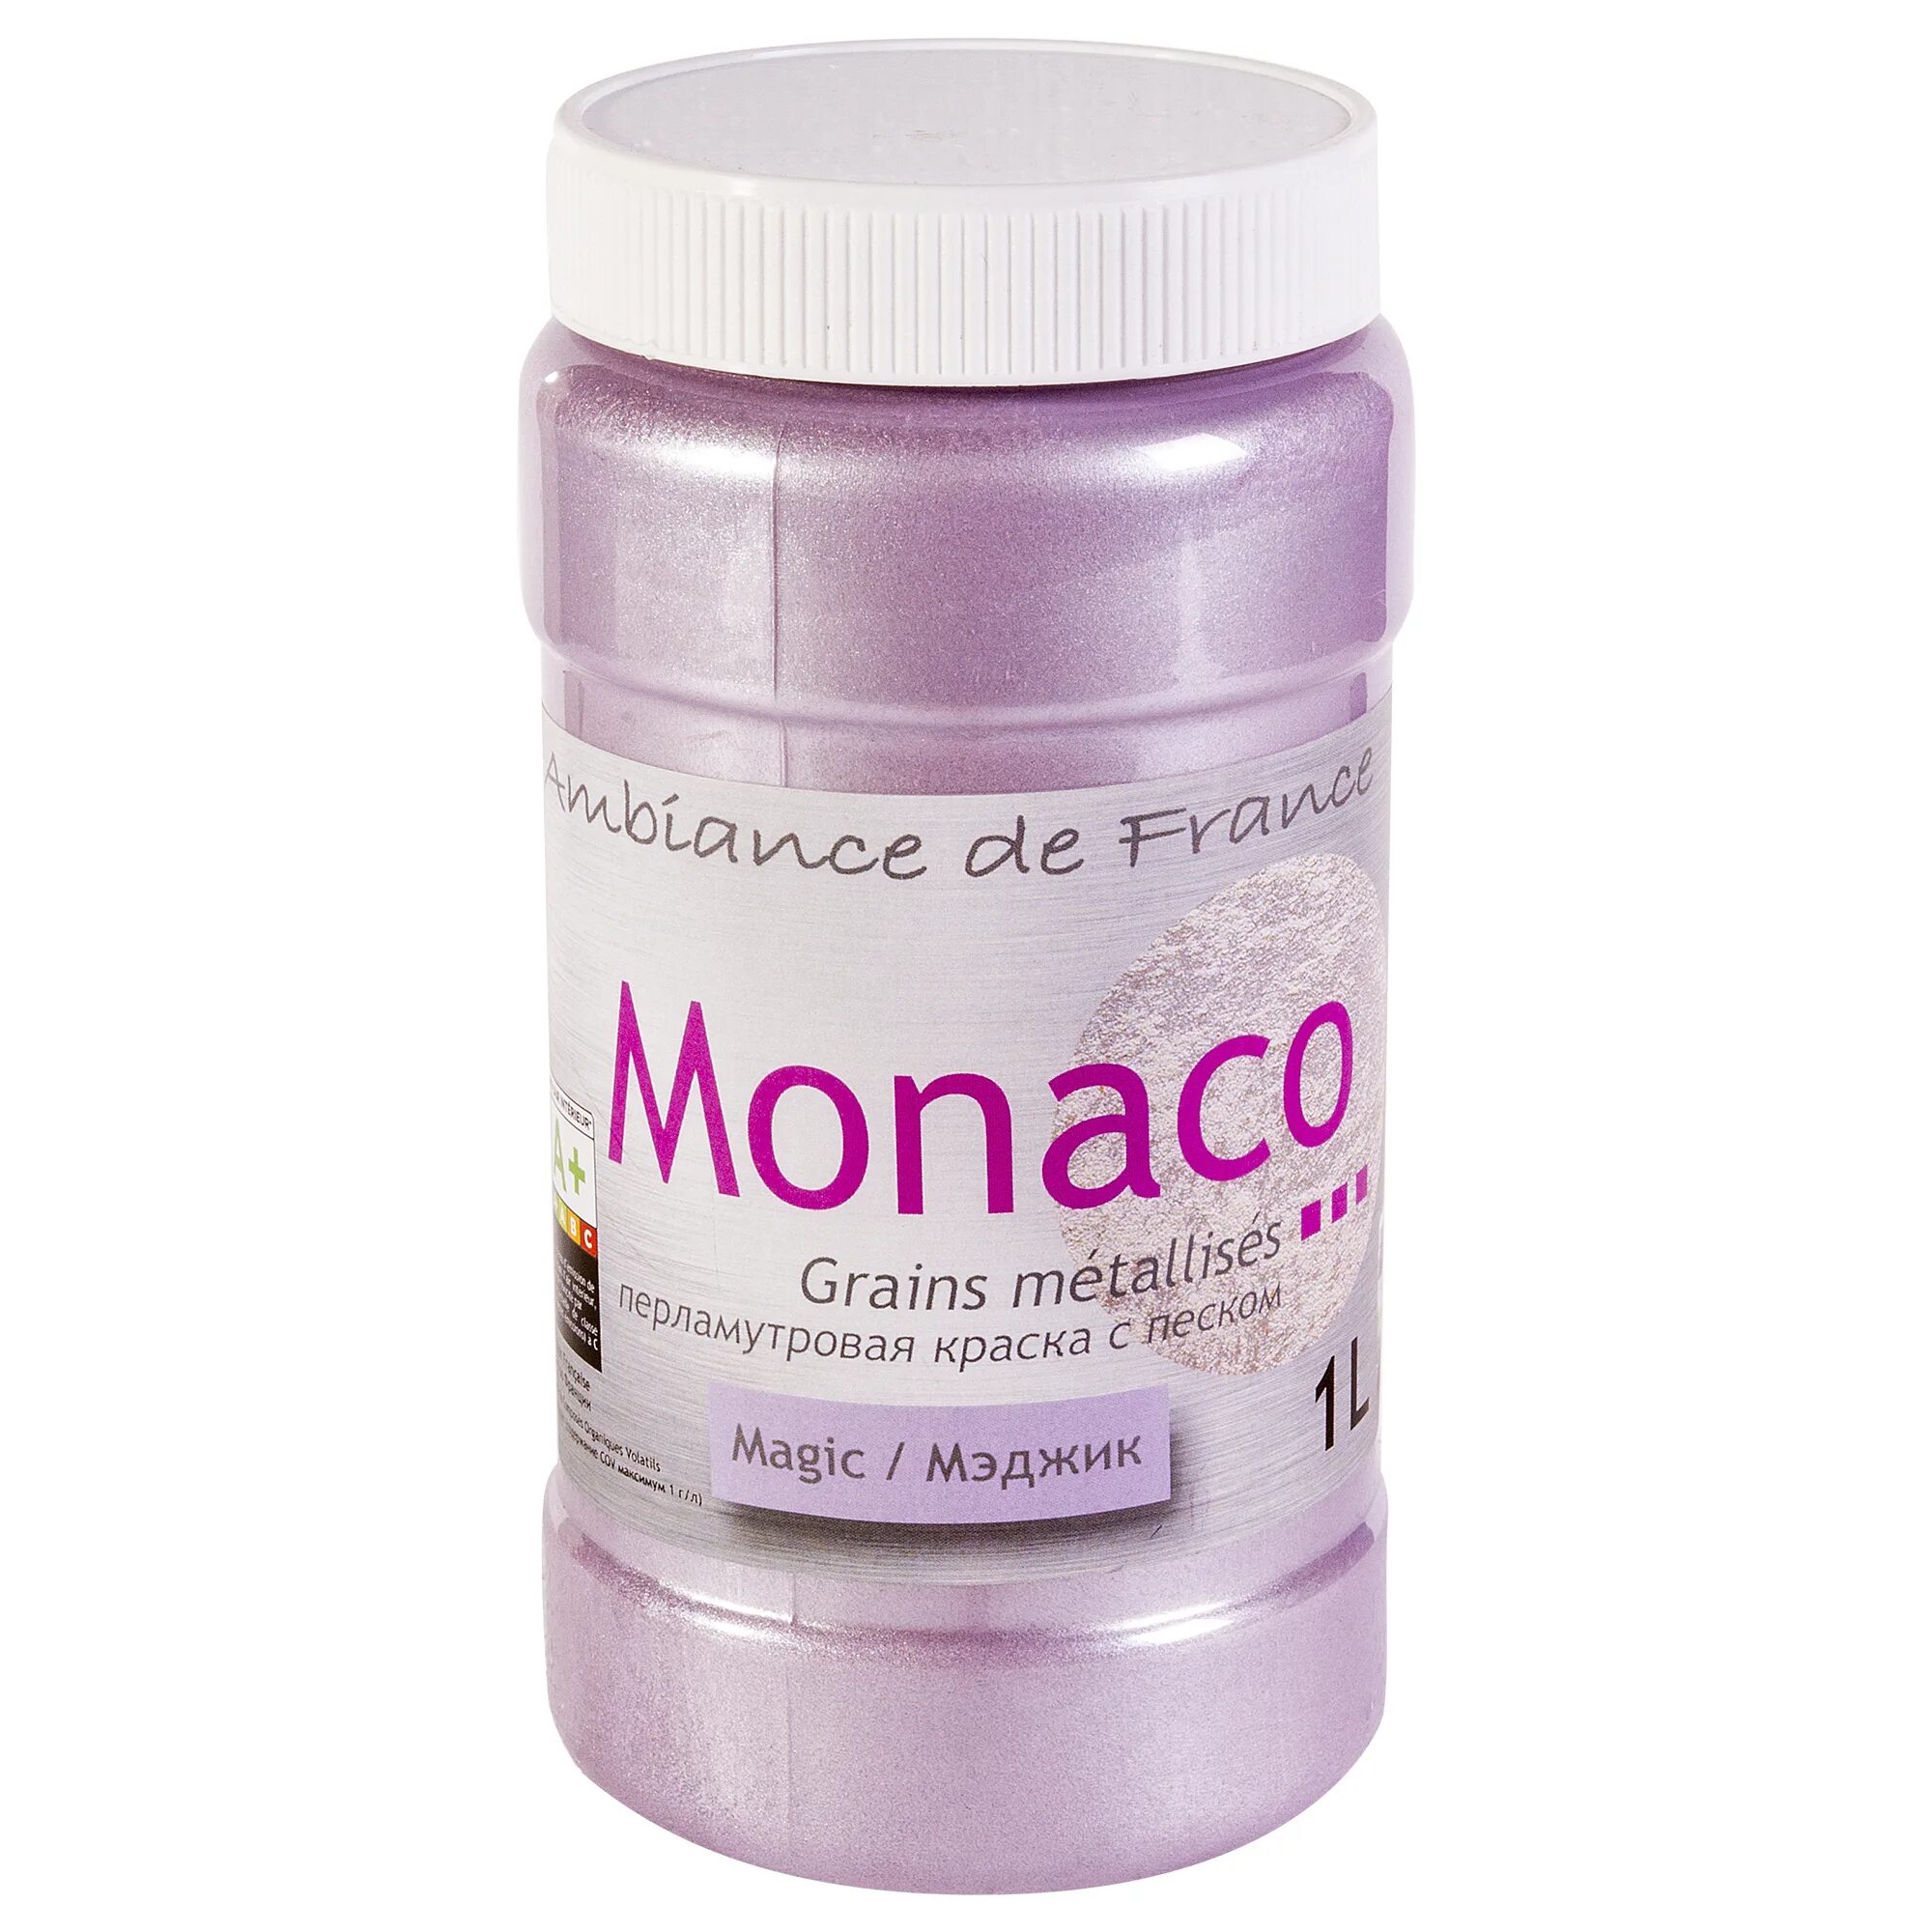 Краска с песком для стен Monaco. Монако краска перламутровая с песком. Перламутровая краска с песком для стен Monaco. Краска Монако с песком.